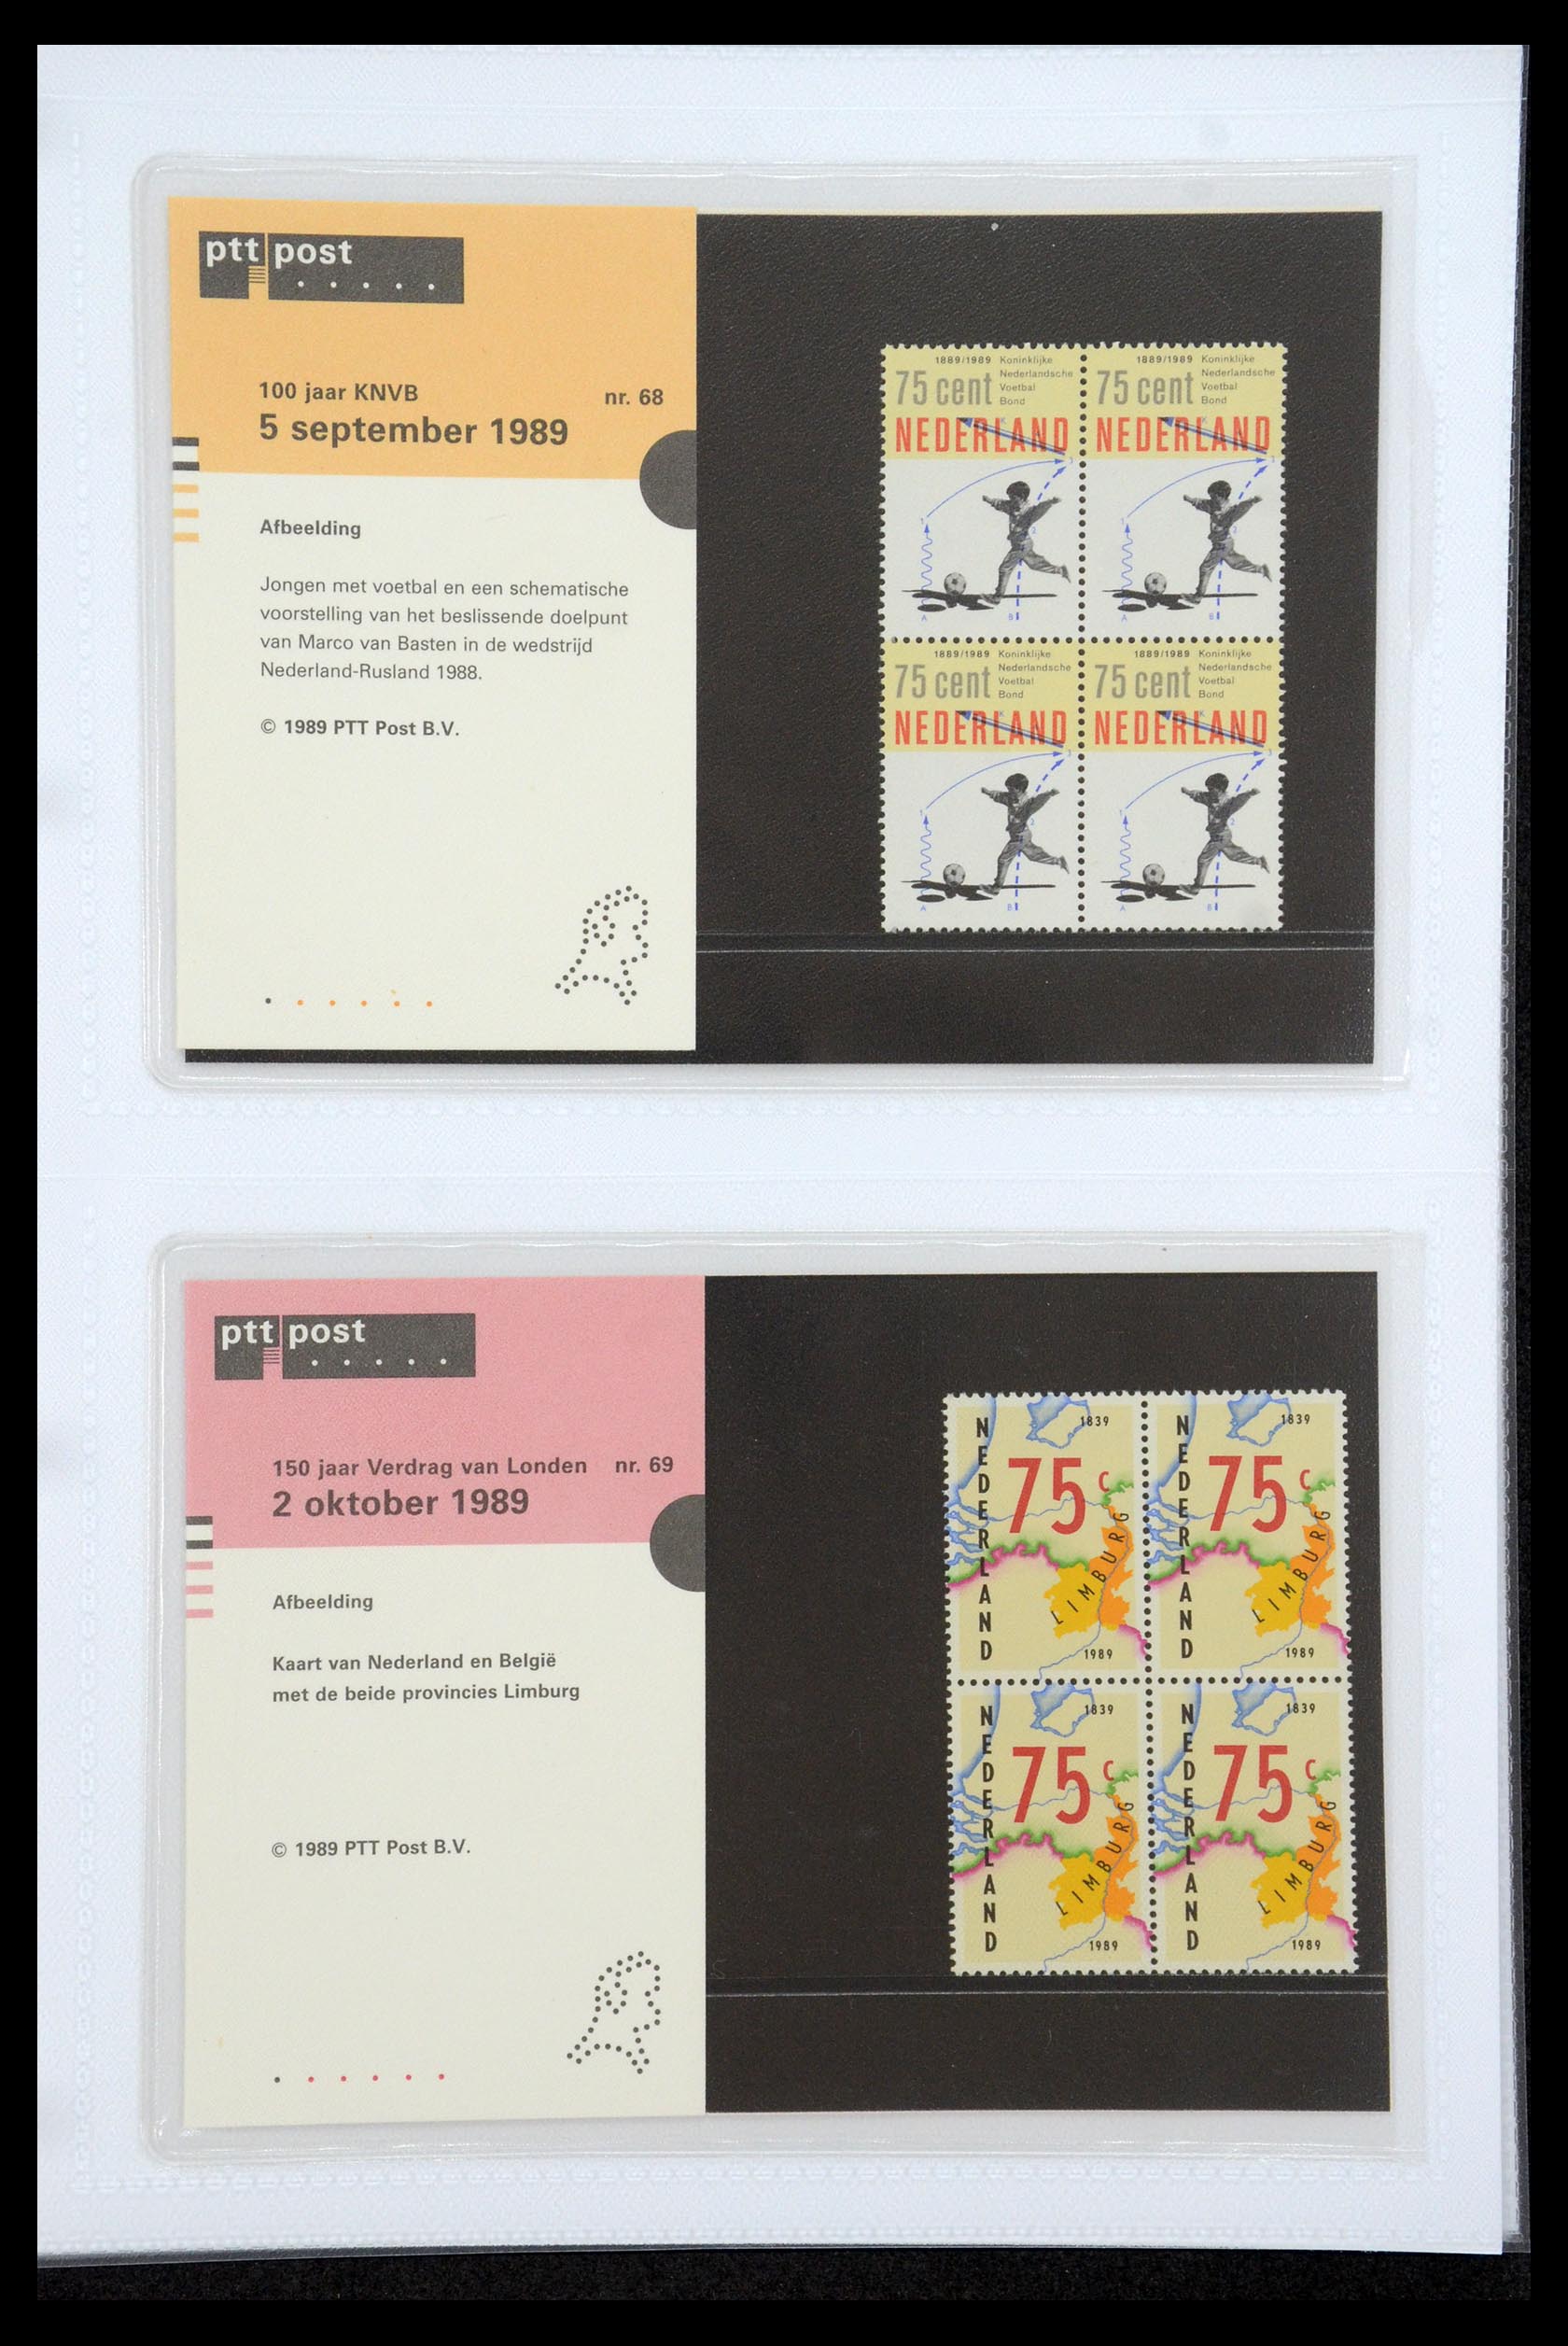 35947 035 - Stamp Collection 35947 Netherlands PTT presentation packs 1982-2019!